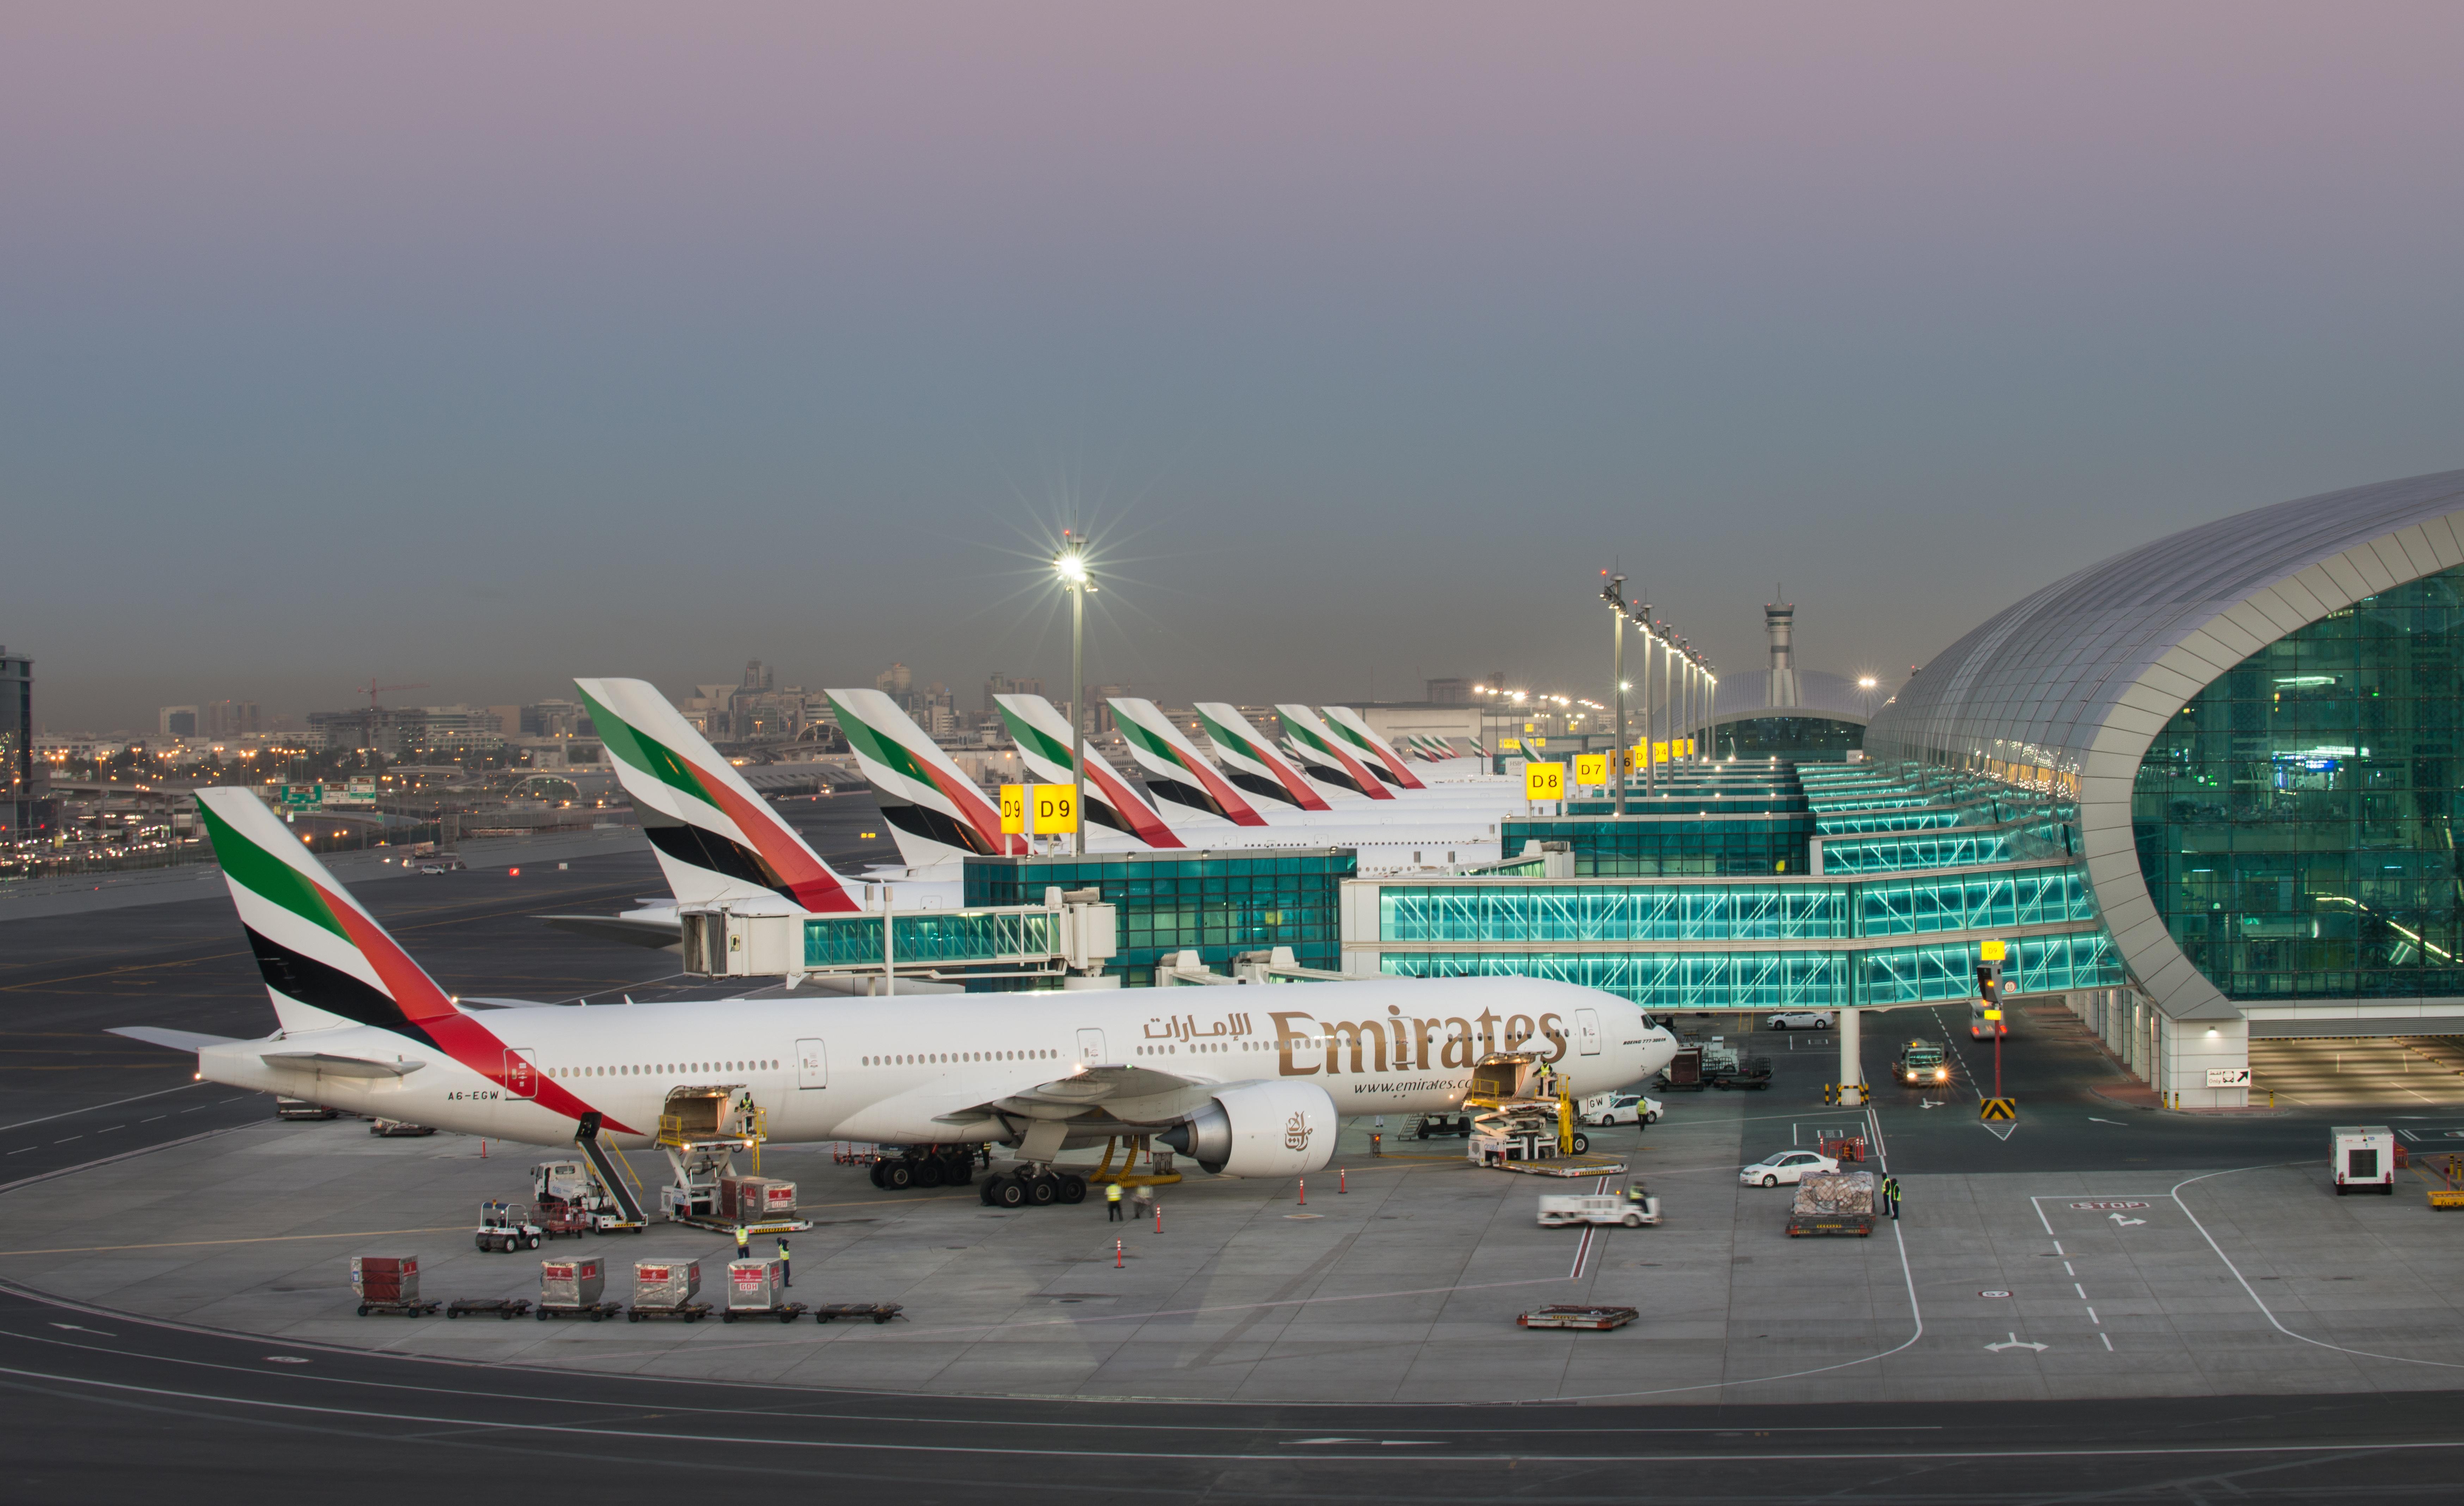 Emirates aircraft lined up at Terminal 3 Dubai